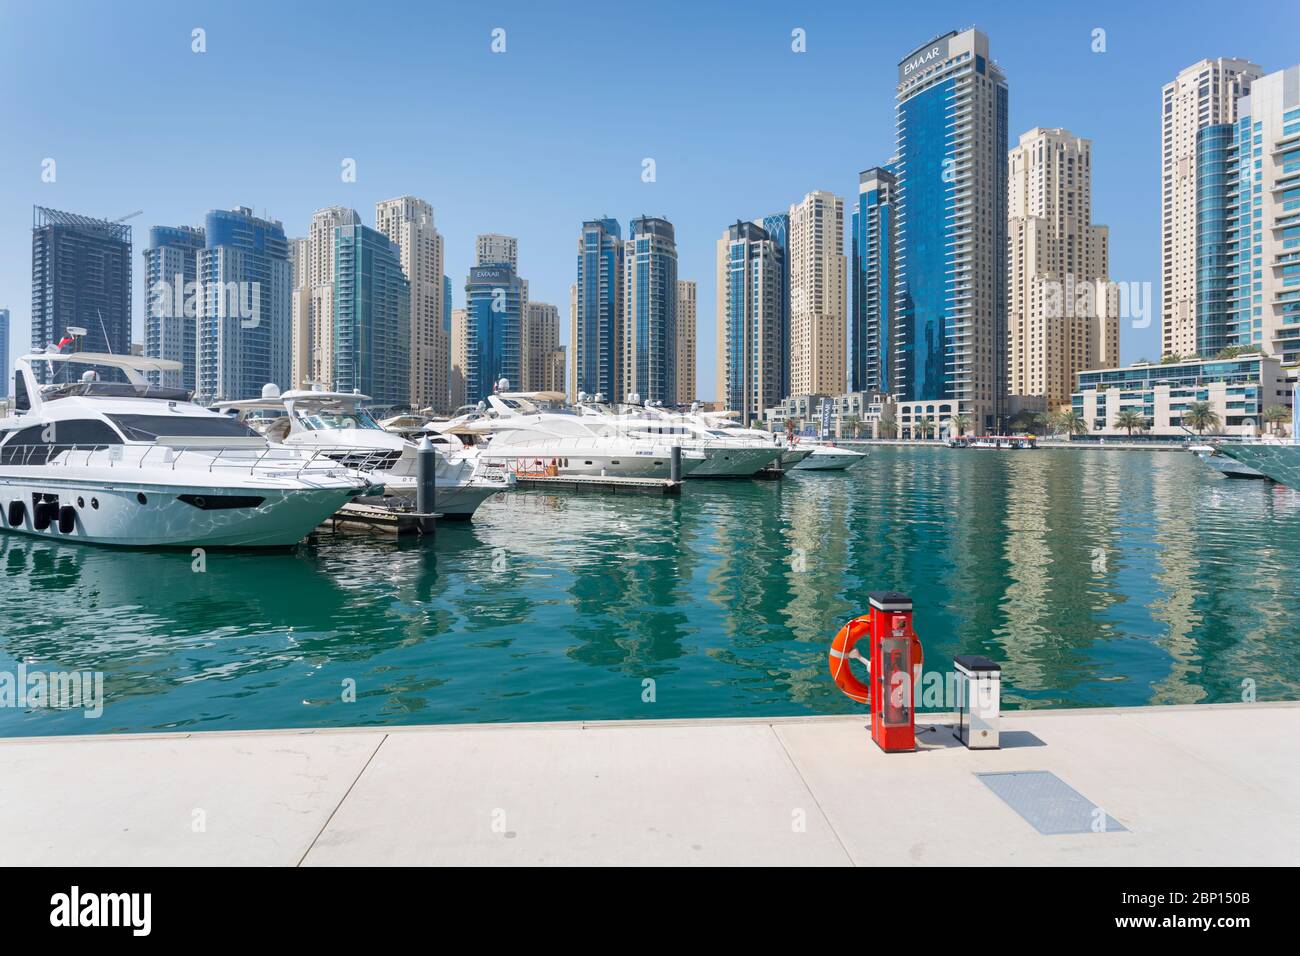 Boats moored in Dubai Marina, Dubai, United Arab Emirates, Middle East Stock Photo